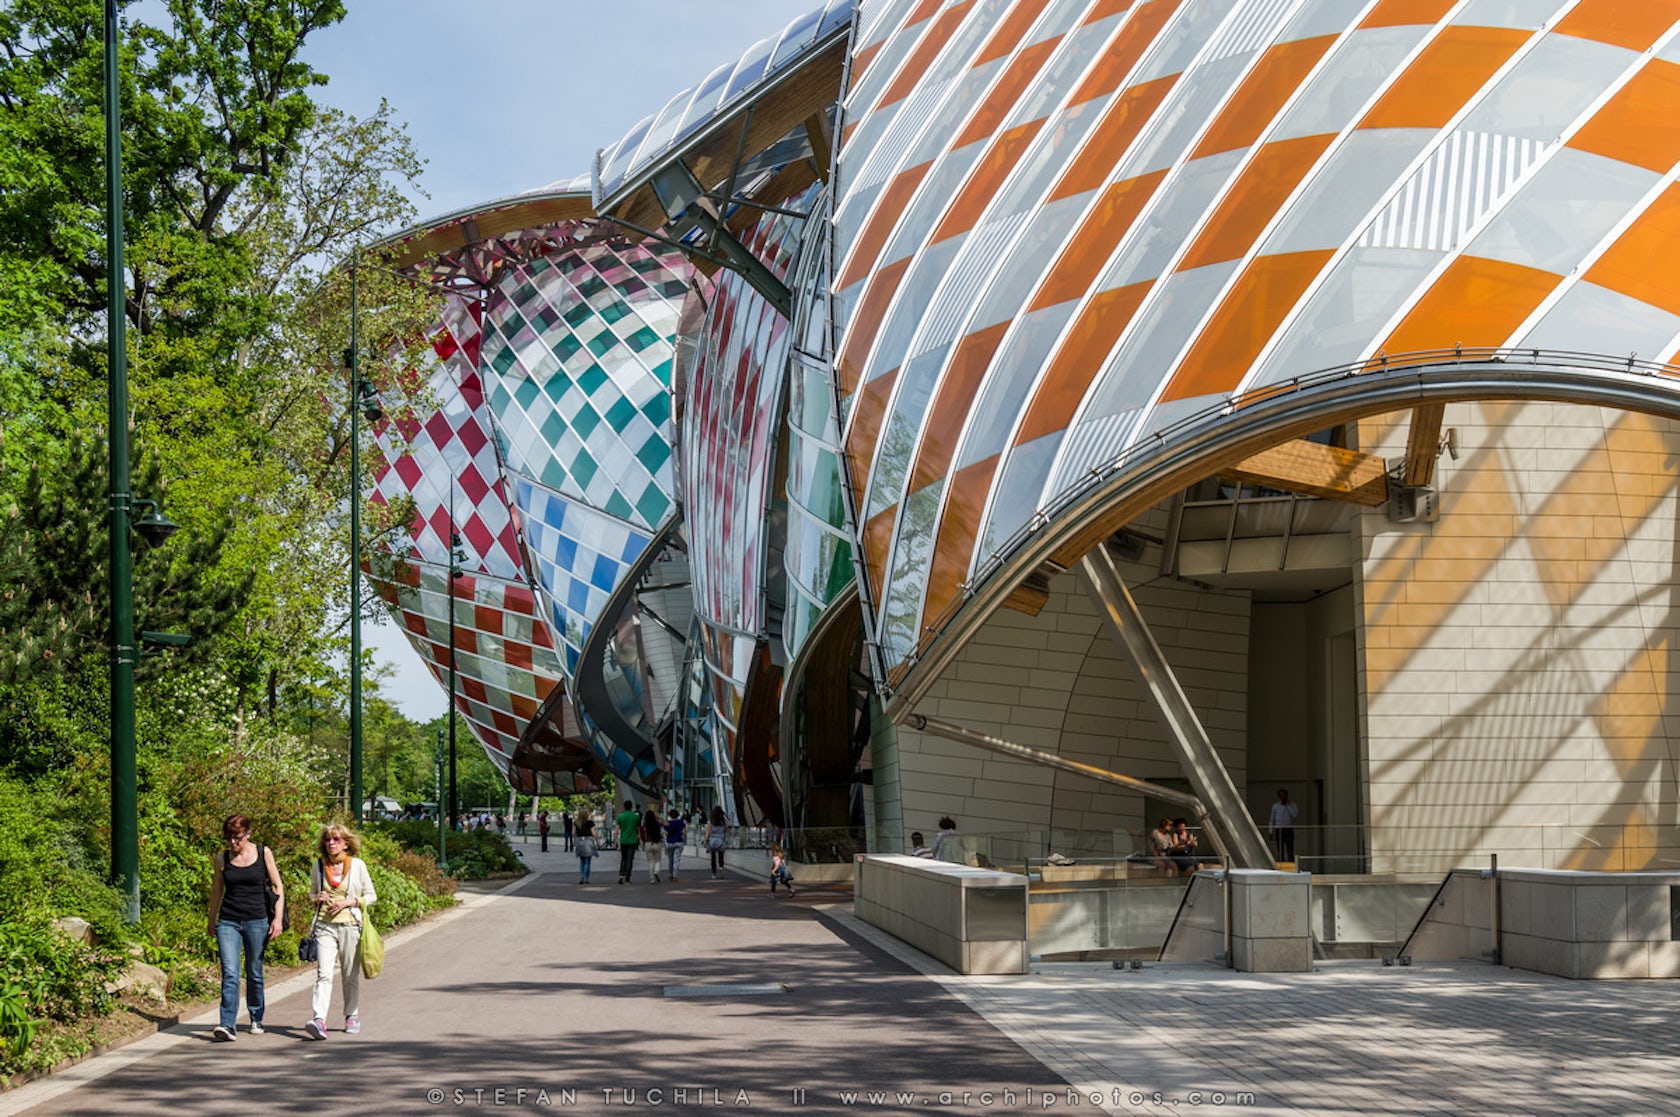 Artist Daniel Buren spruces up Gehry's Fondation Louis Vuitton